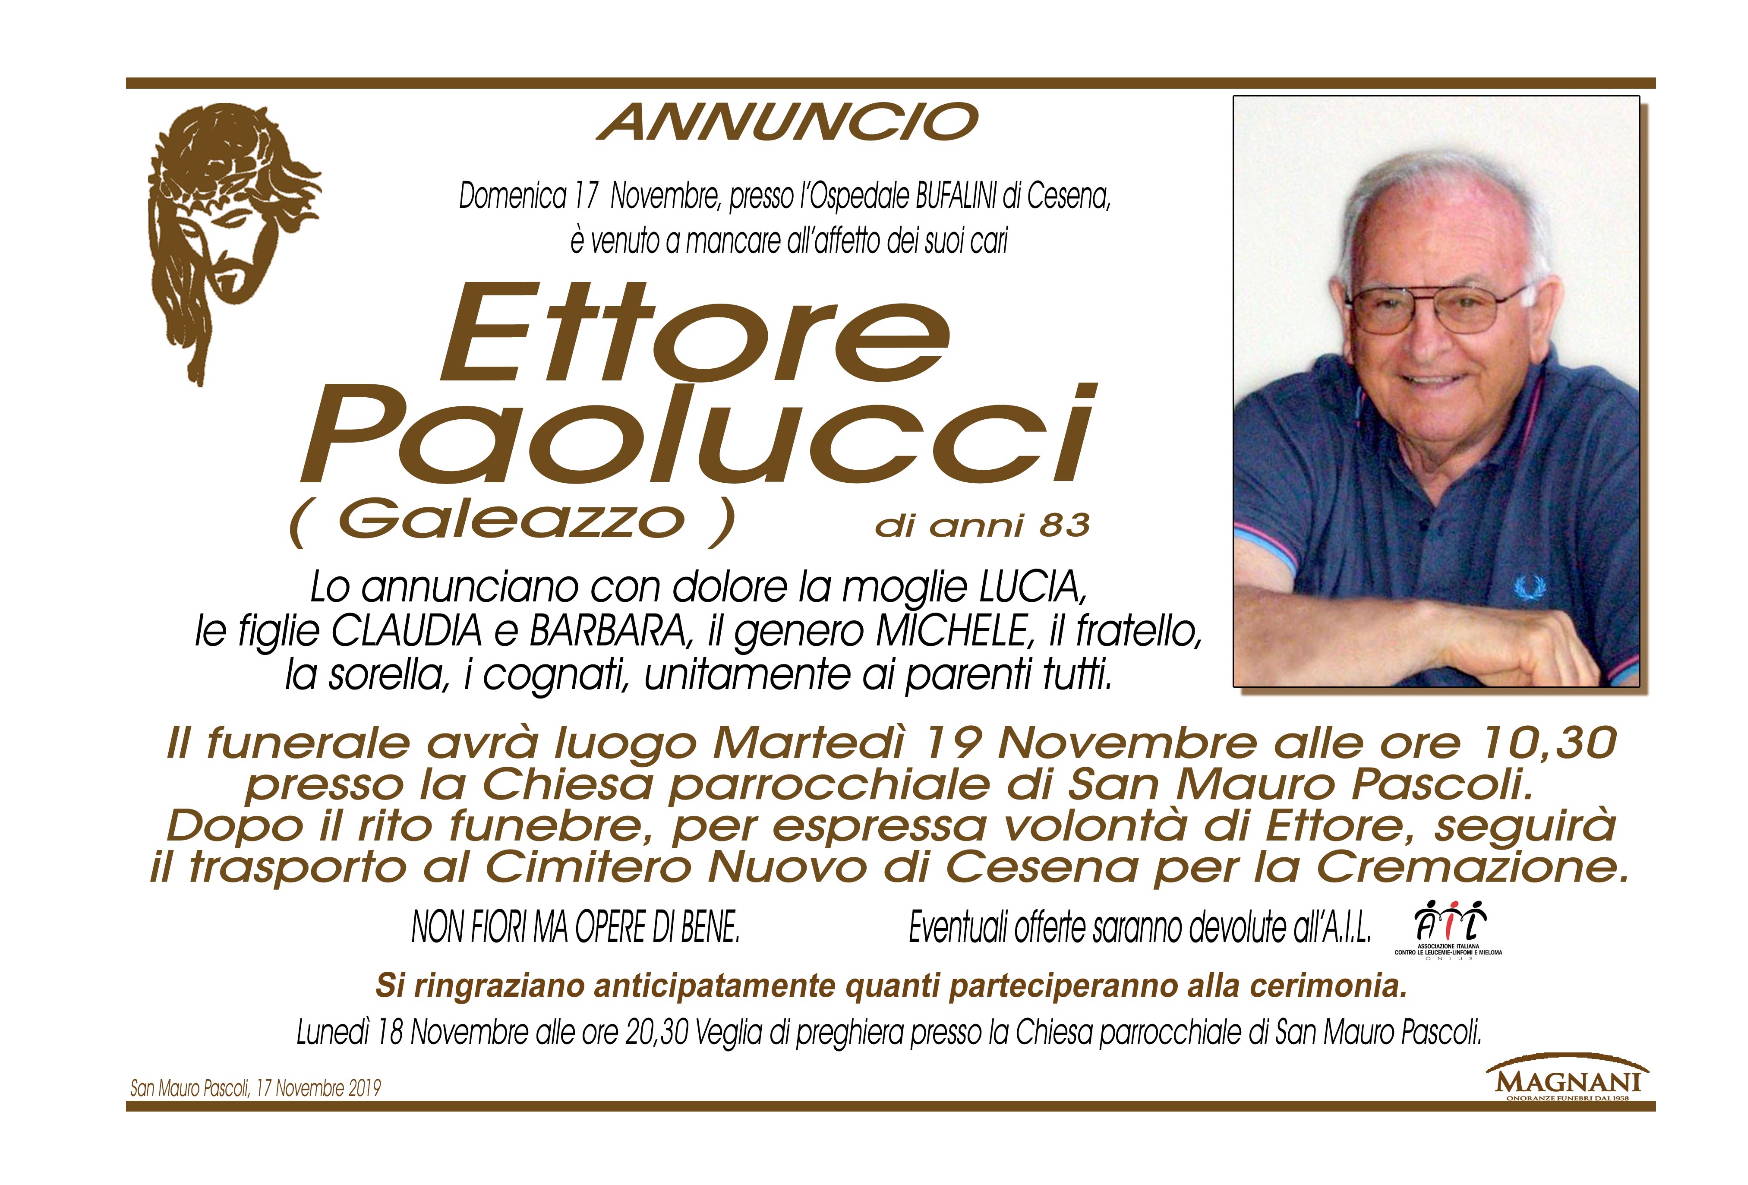 Ettore Paolucci